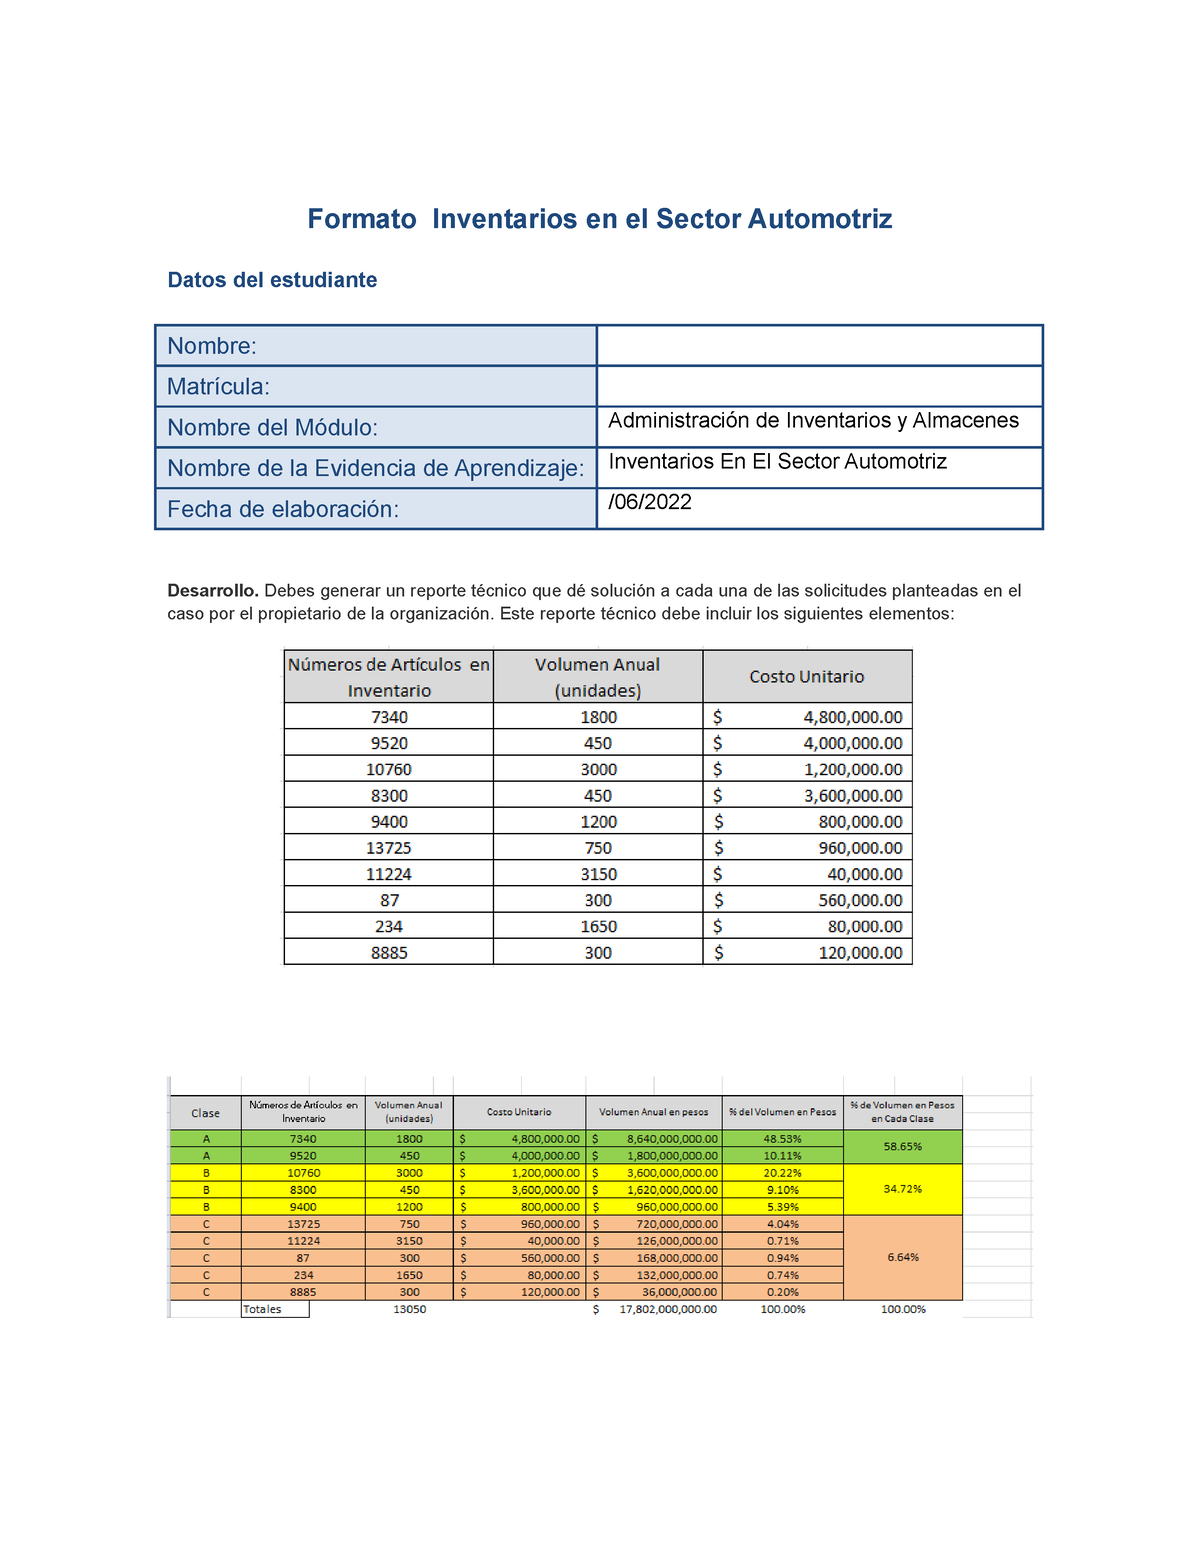 Inventario En El Sector Automotriz Ea 2 Formato Inventarios En El Sector Automotriz Datos Del 7064